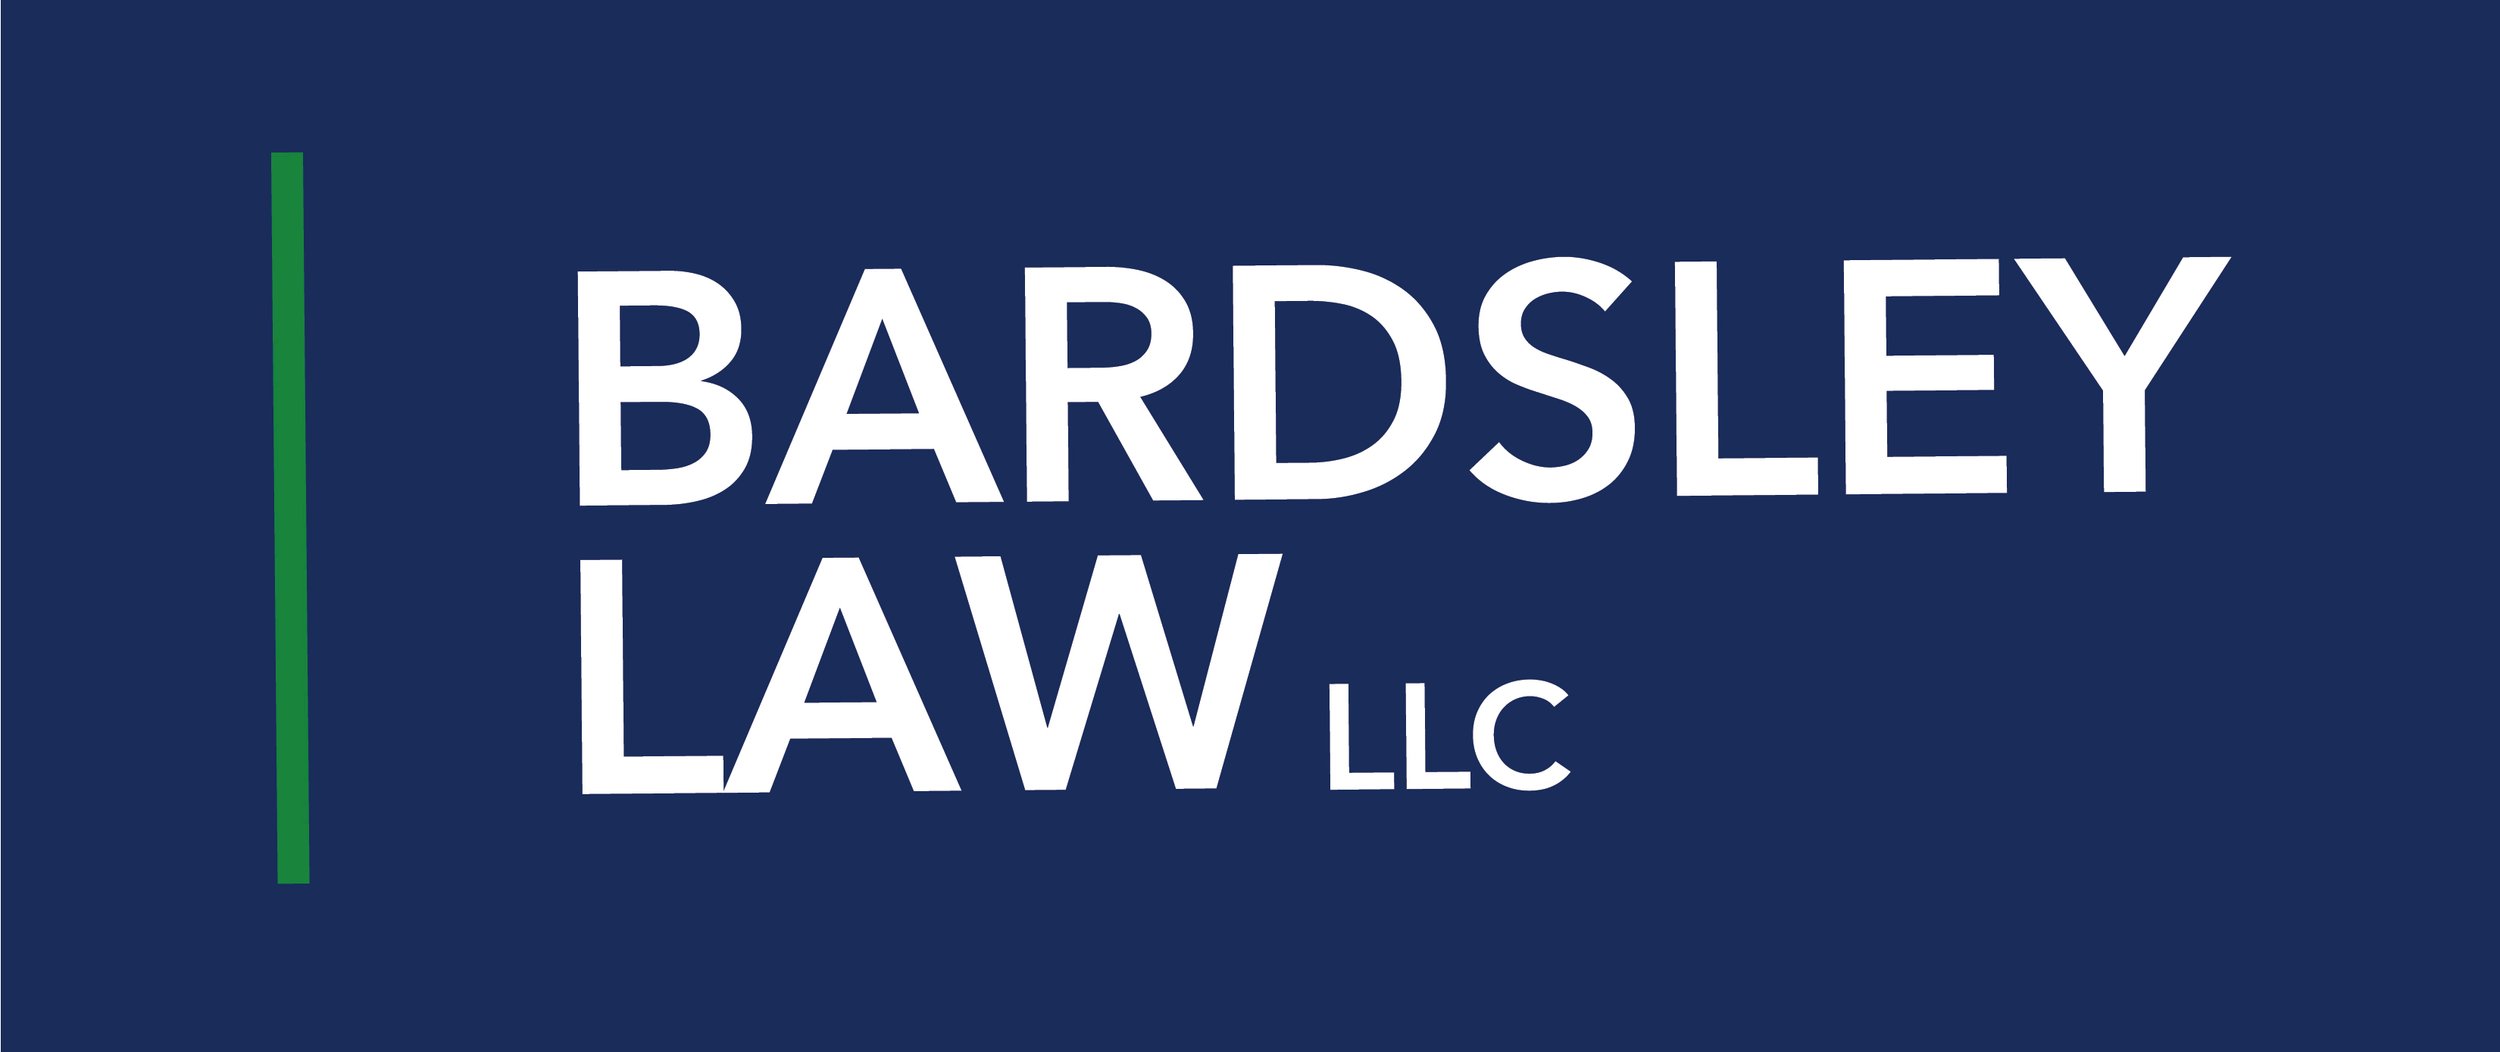 Bardsley Logo.jpg